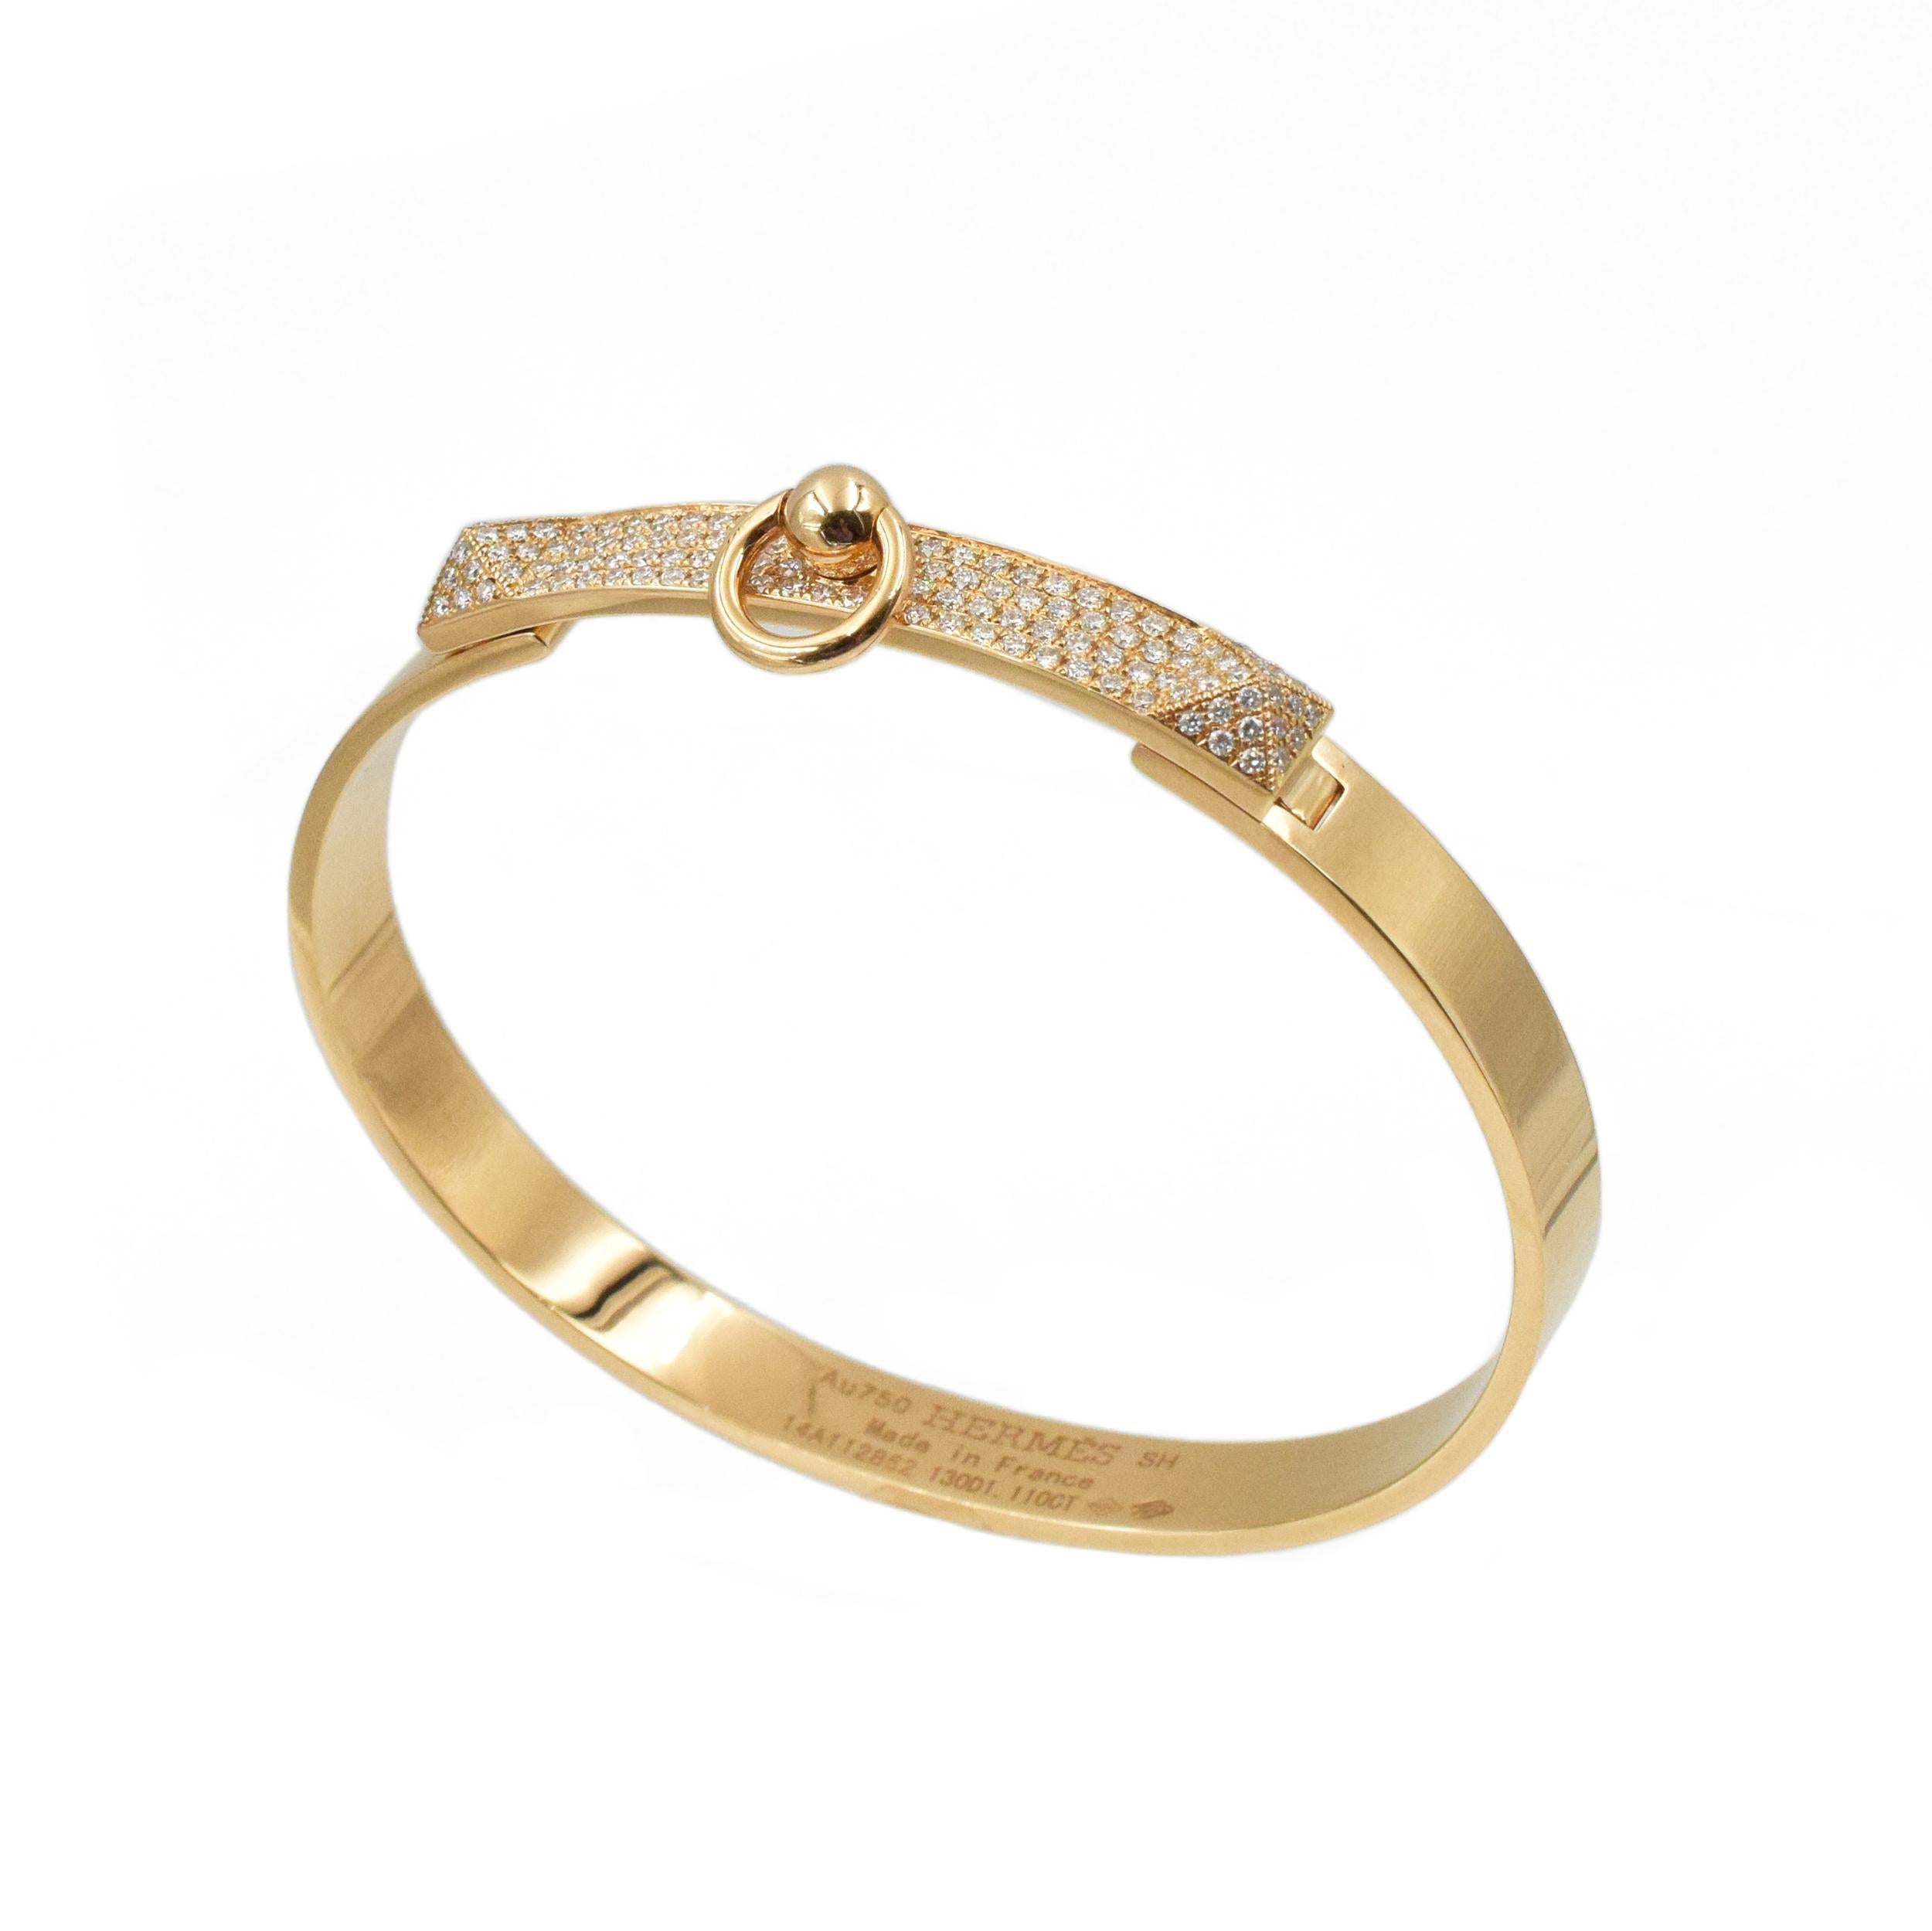 Bracelet 'Collier de Chein' d'Hermès Ce bracelet a 130
diamants pesant environ 1,11 carats sertis dans de l'or rose 18k.
Signé Hermes, Au750, SH (petite taille), Made in France,
xxxxxxxxx, 130D1. 110CT, Makers Mark, et French Assay mark. Largeur :